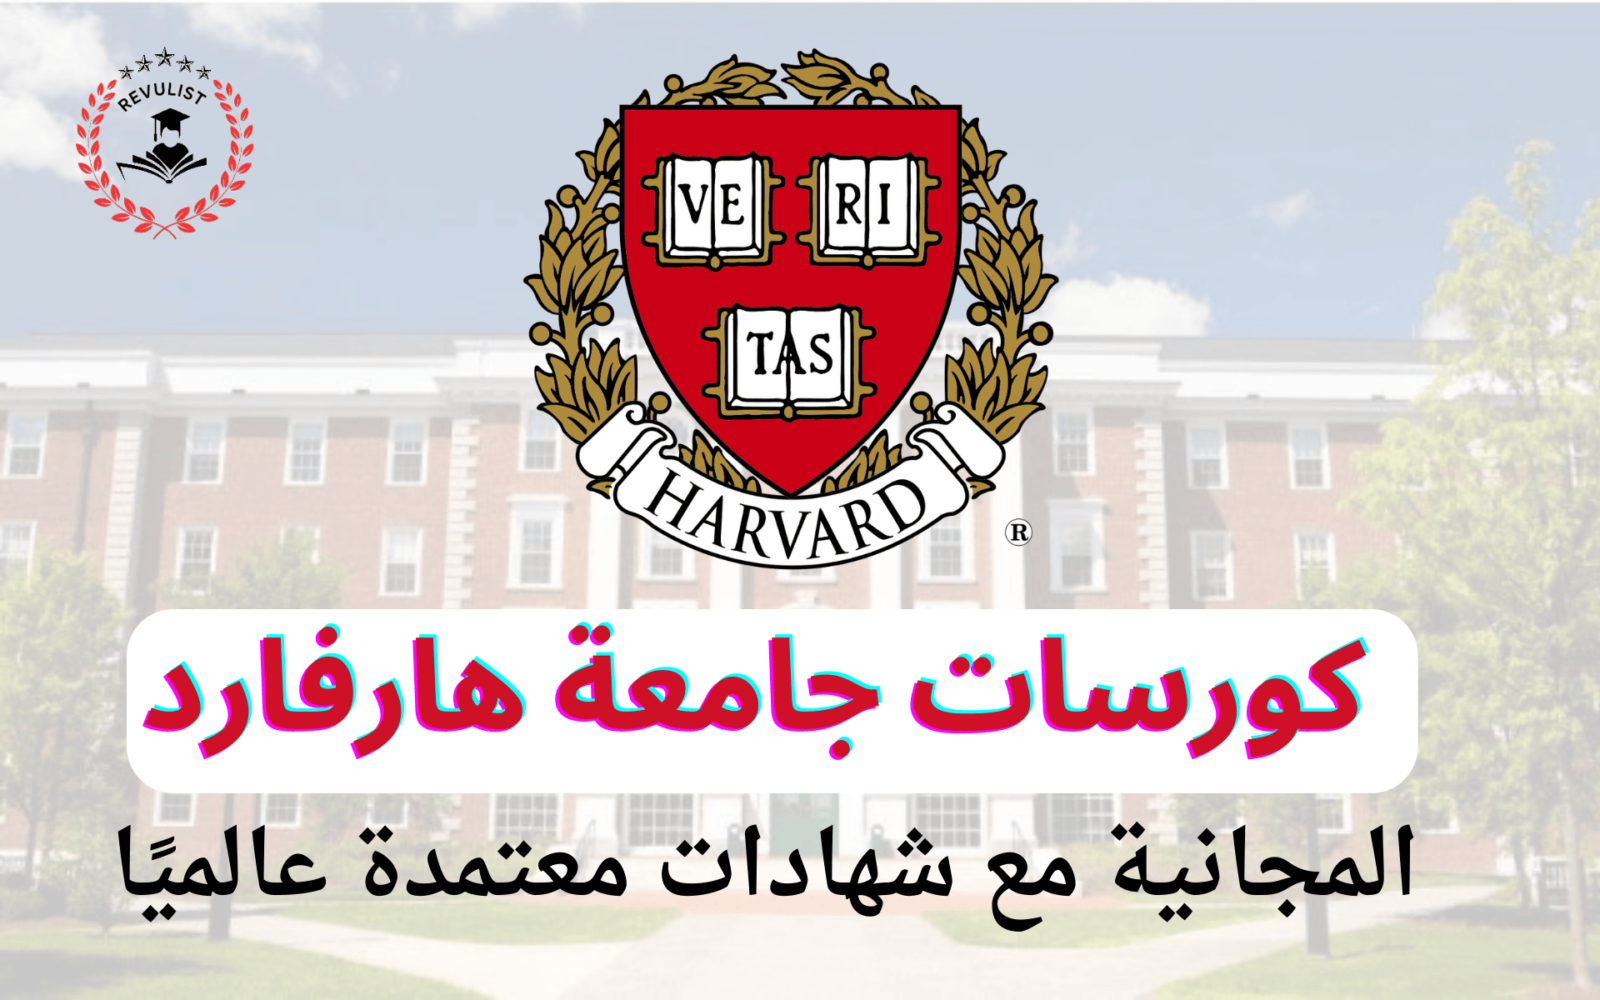 كورسات جامعة هارفارد